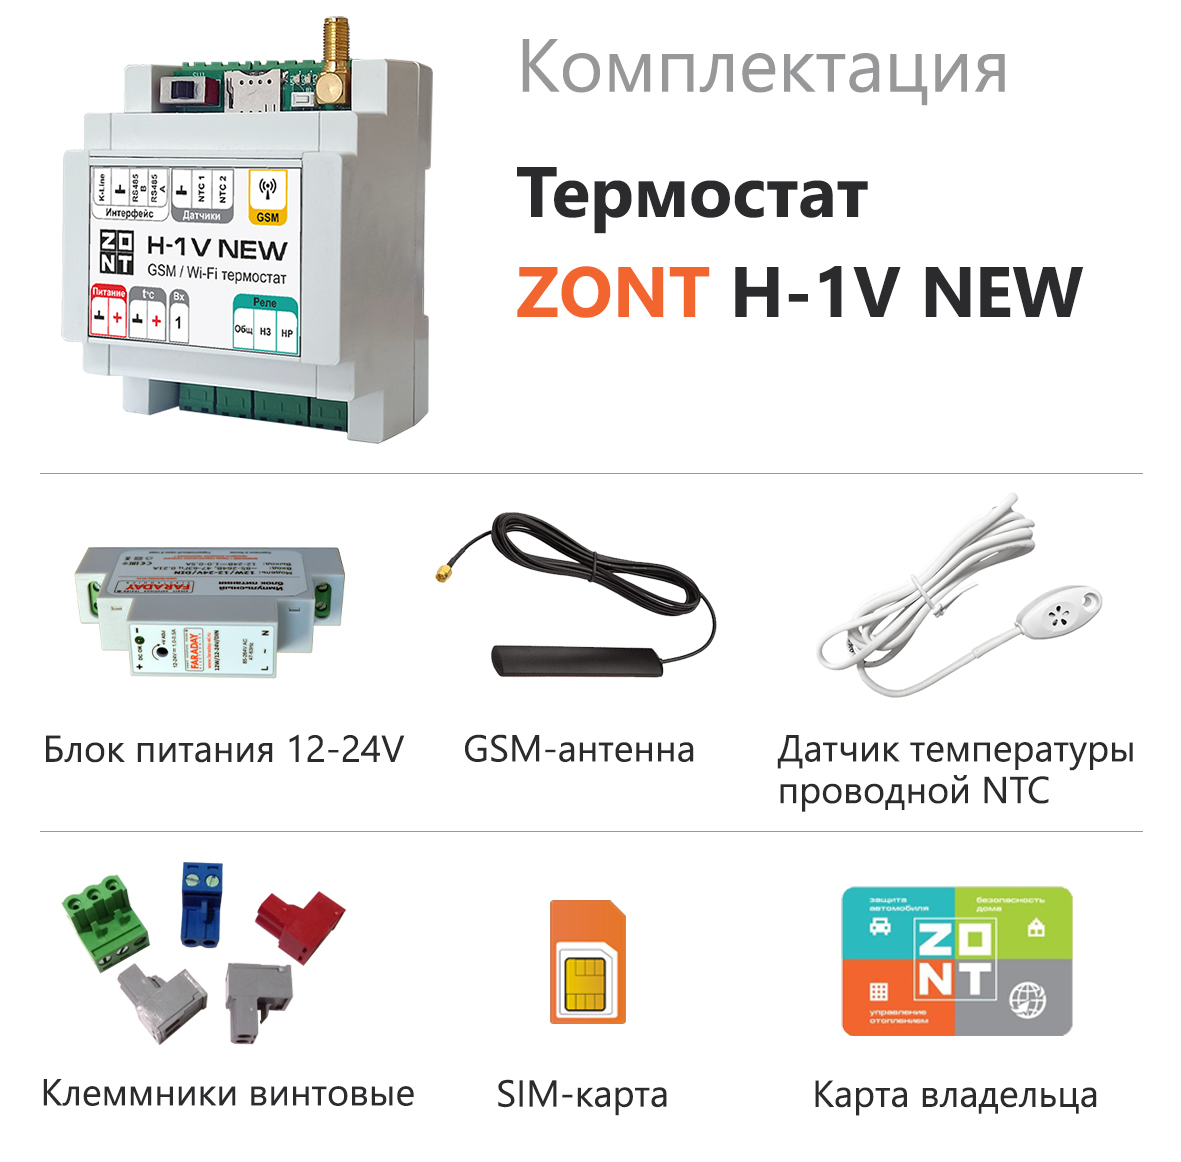 Детальное изображение товара "Отопительный термостат ZONT H-1V NEW" из каталога оборудования для видеонаблюдения